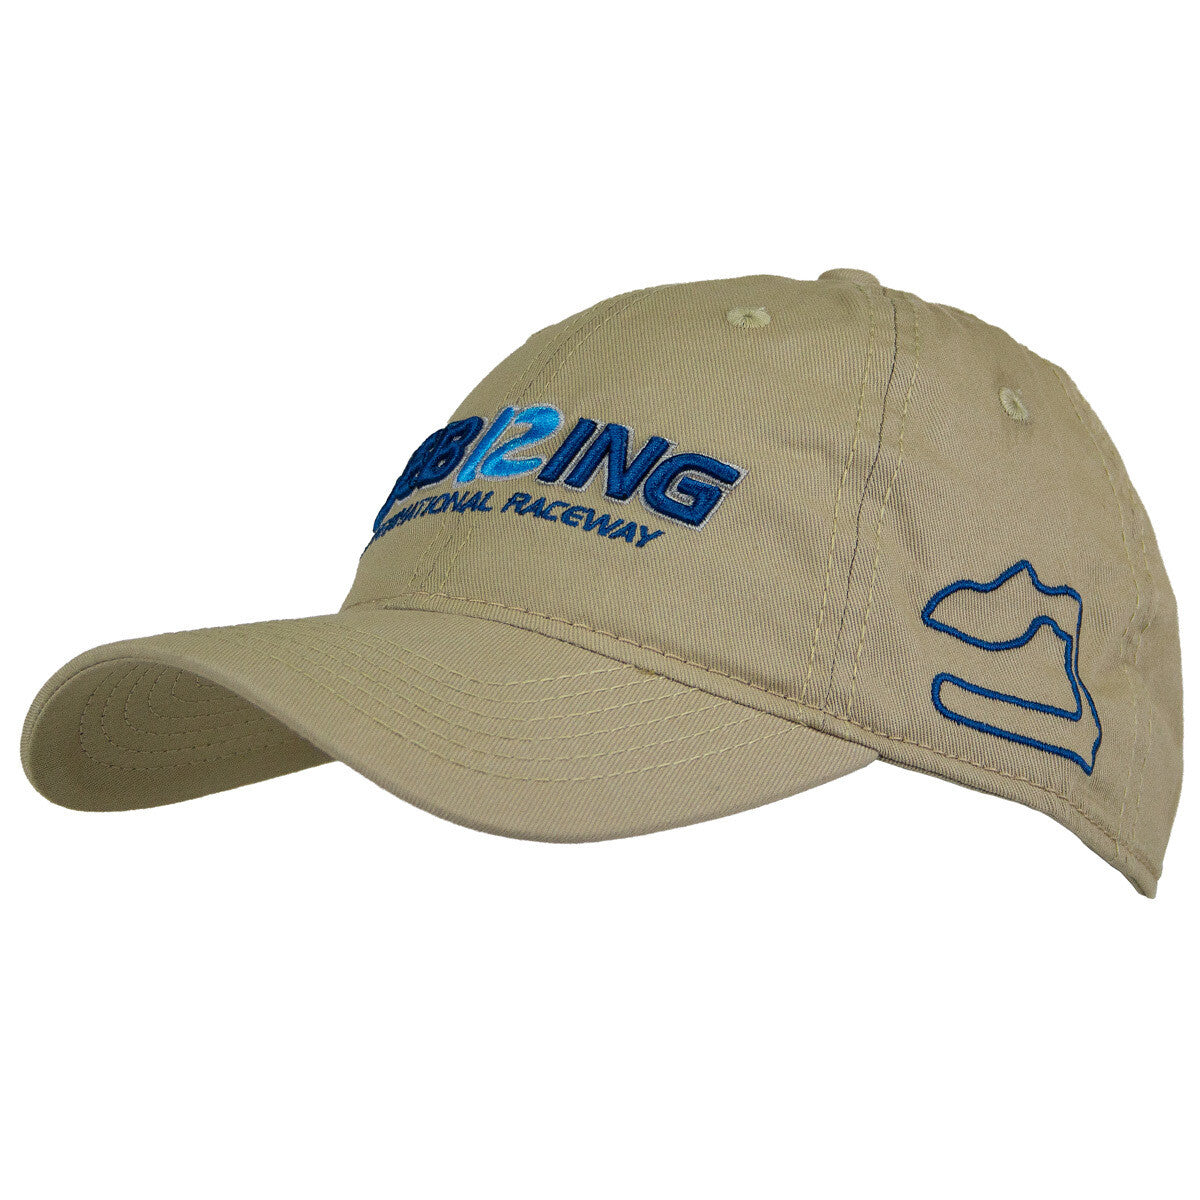 Sebring Hat - Khaki